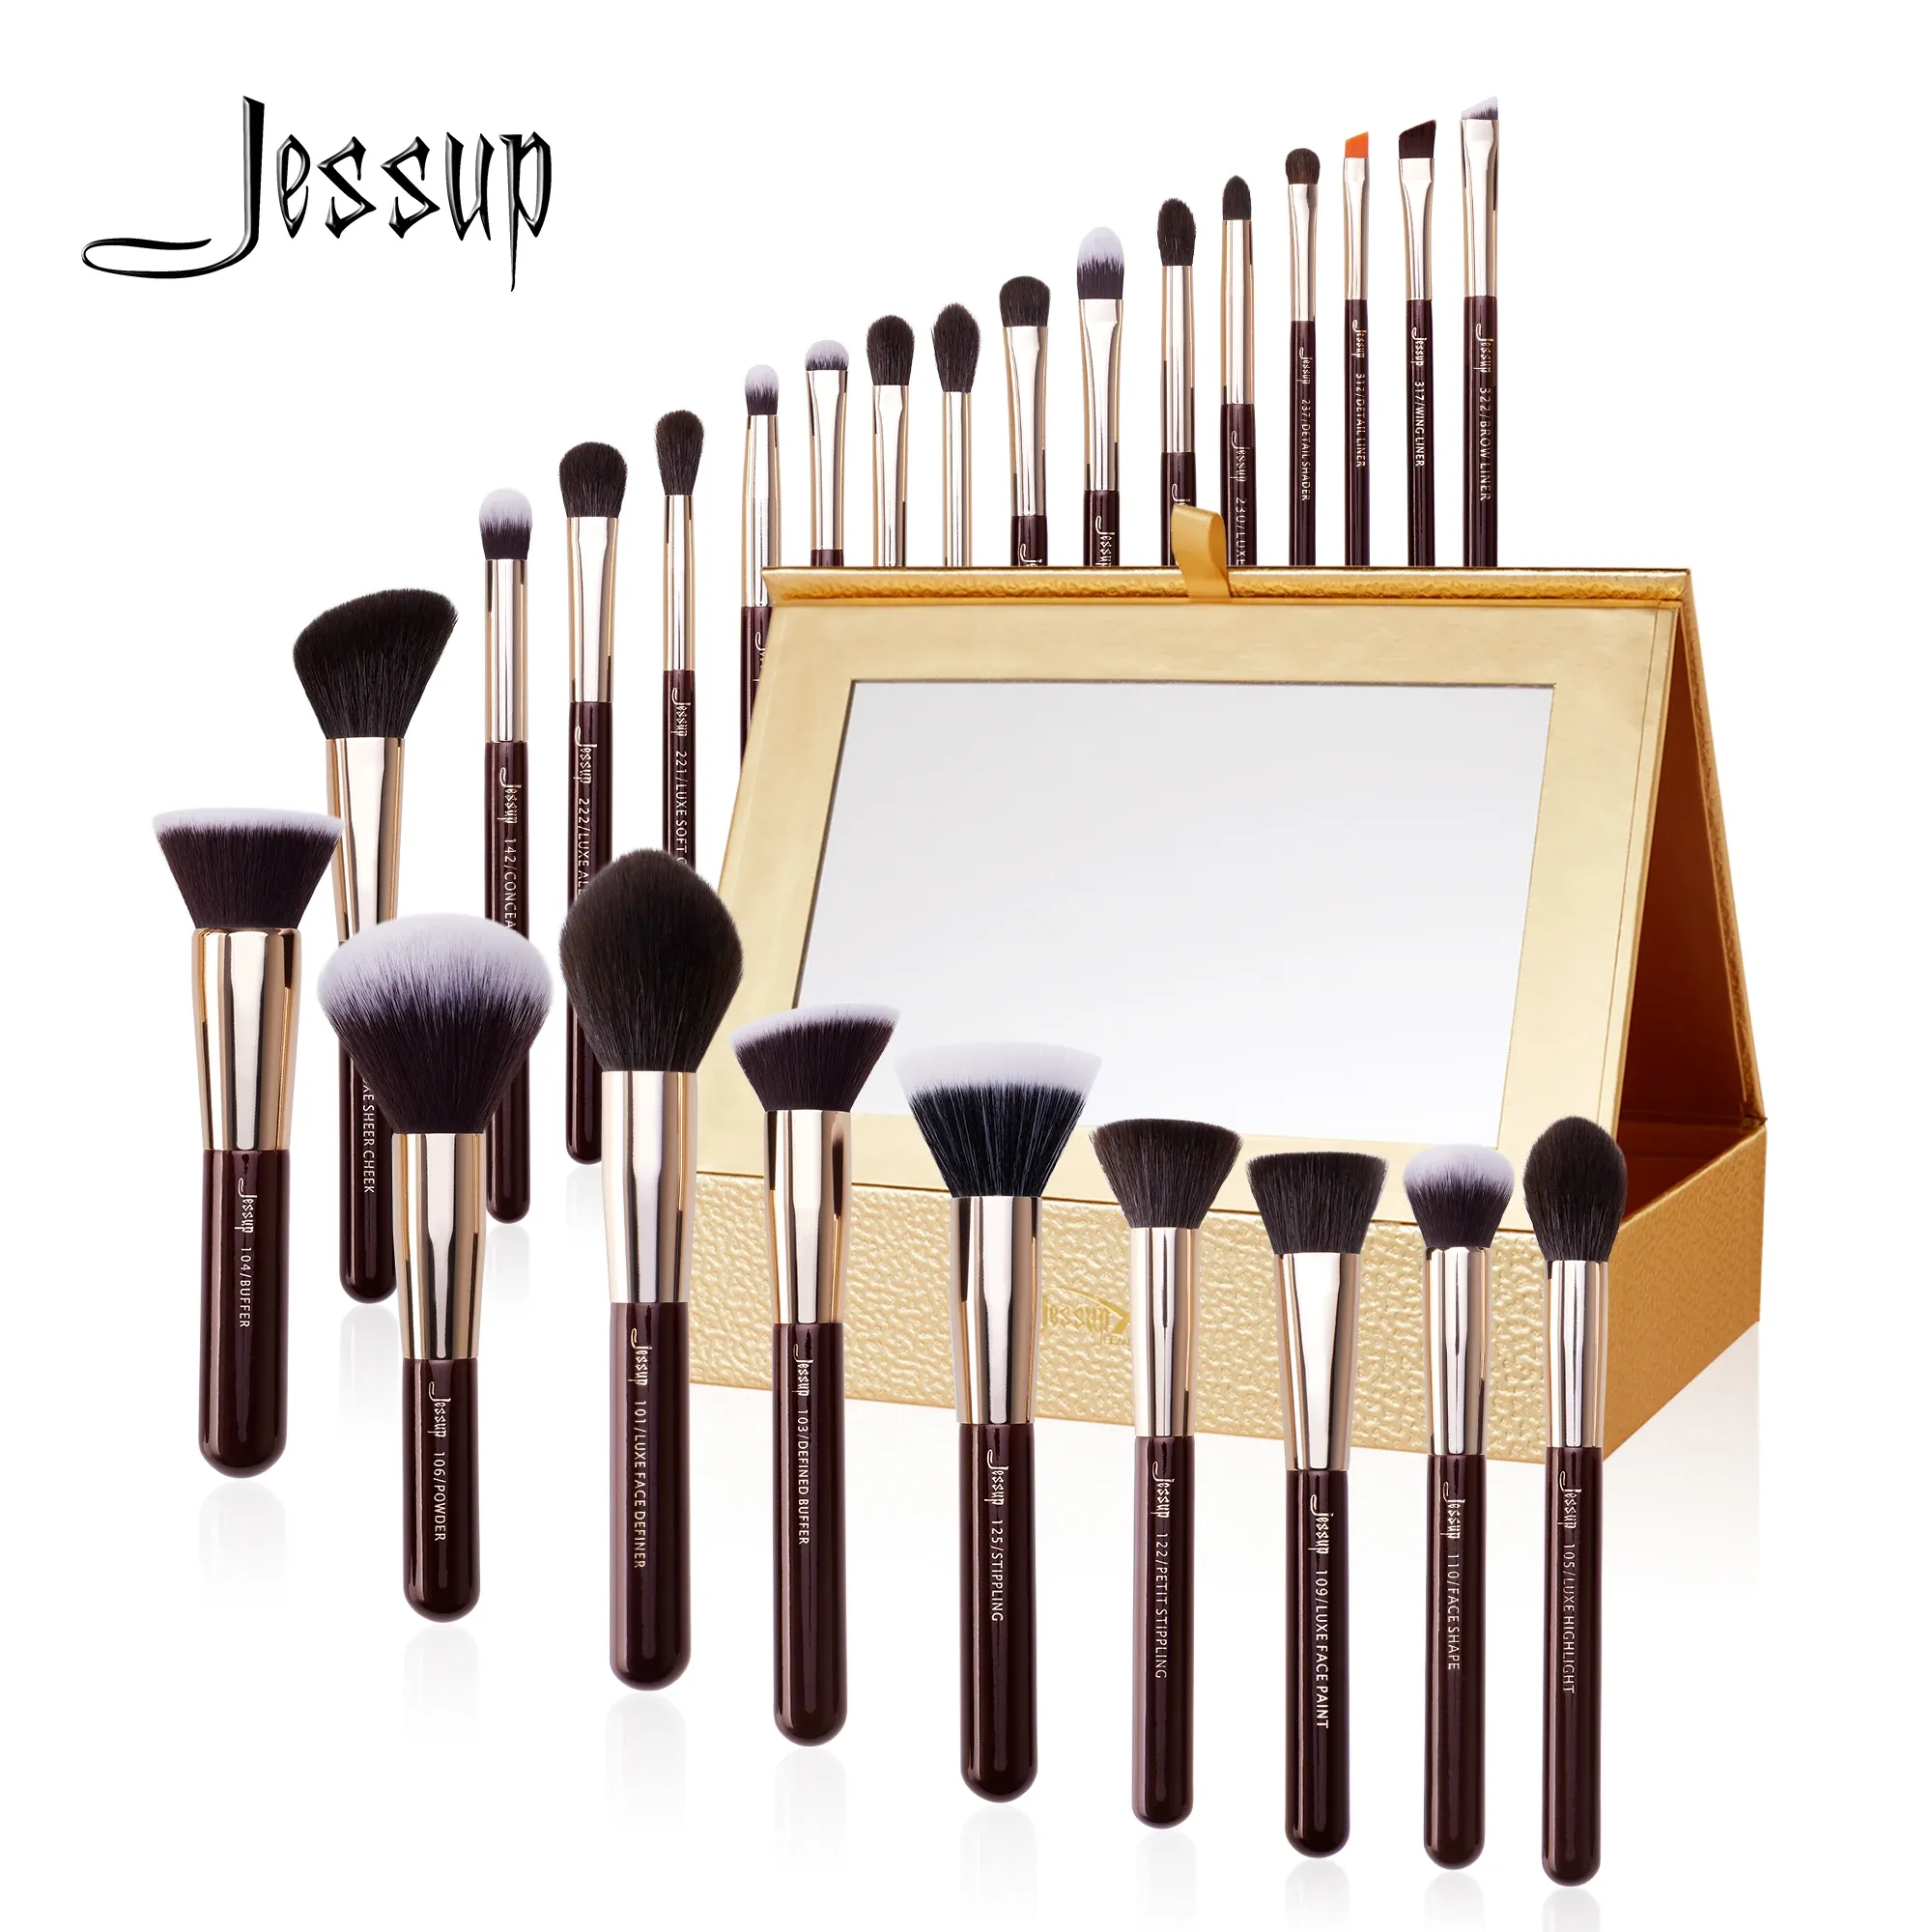 Shadow Jessup Makeup Brushes Set 1525pcs Makeup Brush Eyeshadow Blending Powder Foundation Blusher Concealer Cosmetics Storage Box